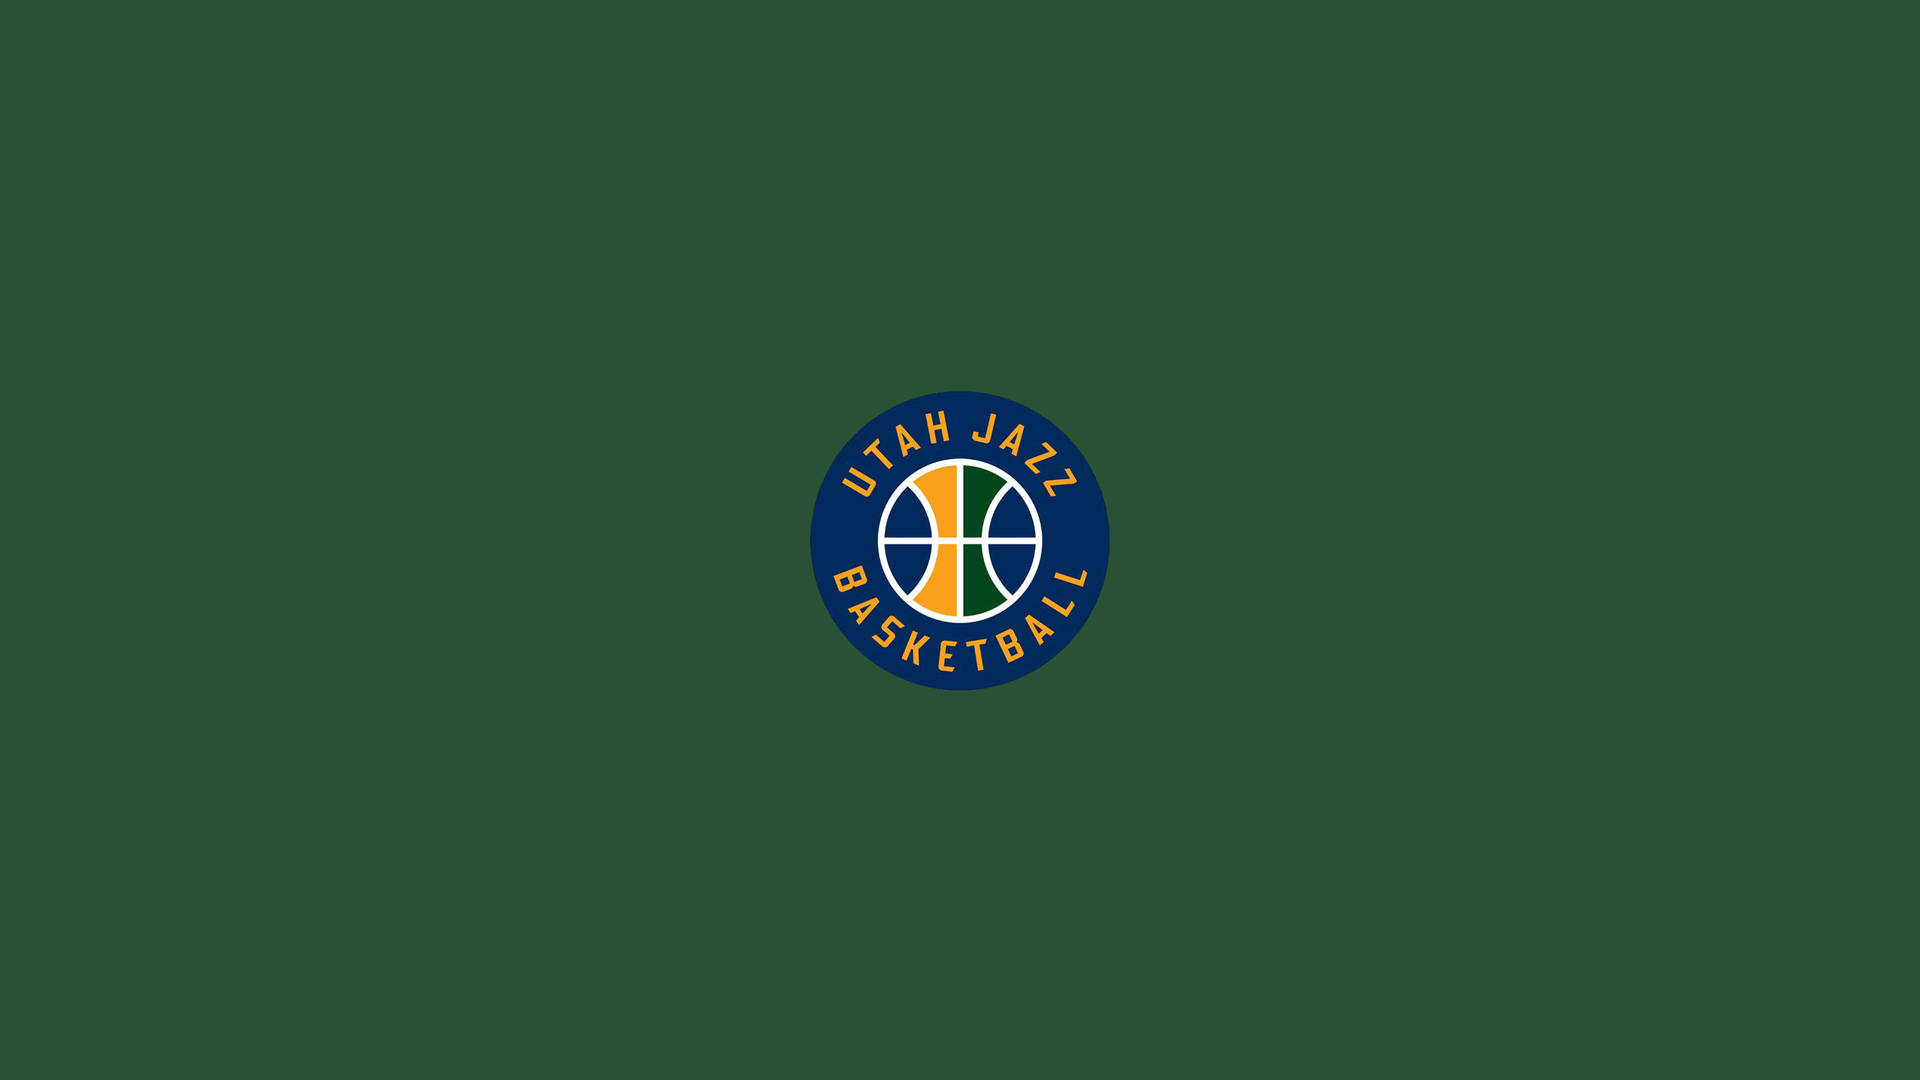 Utah Jazz Emblem Minimalist Background